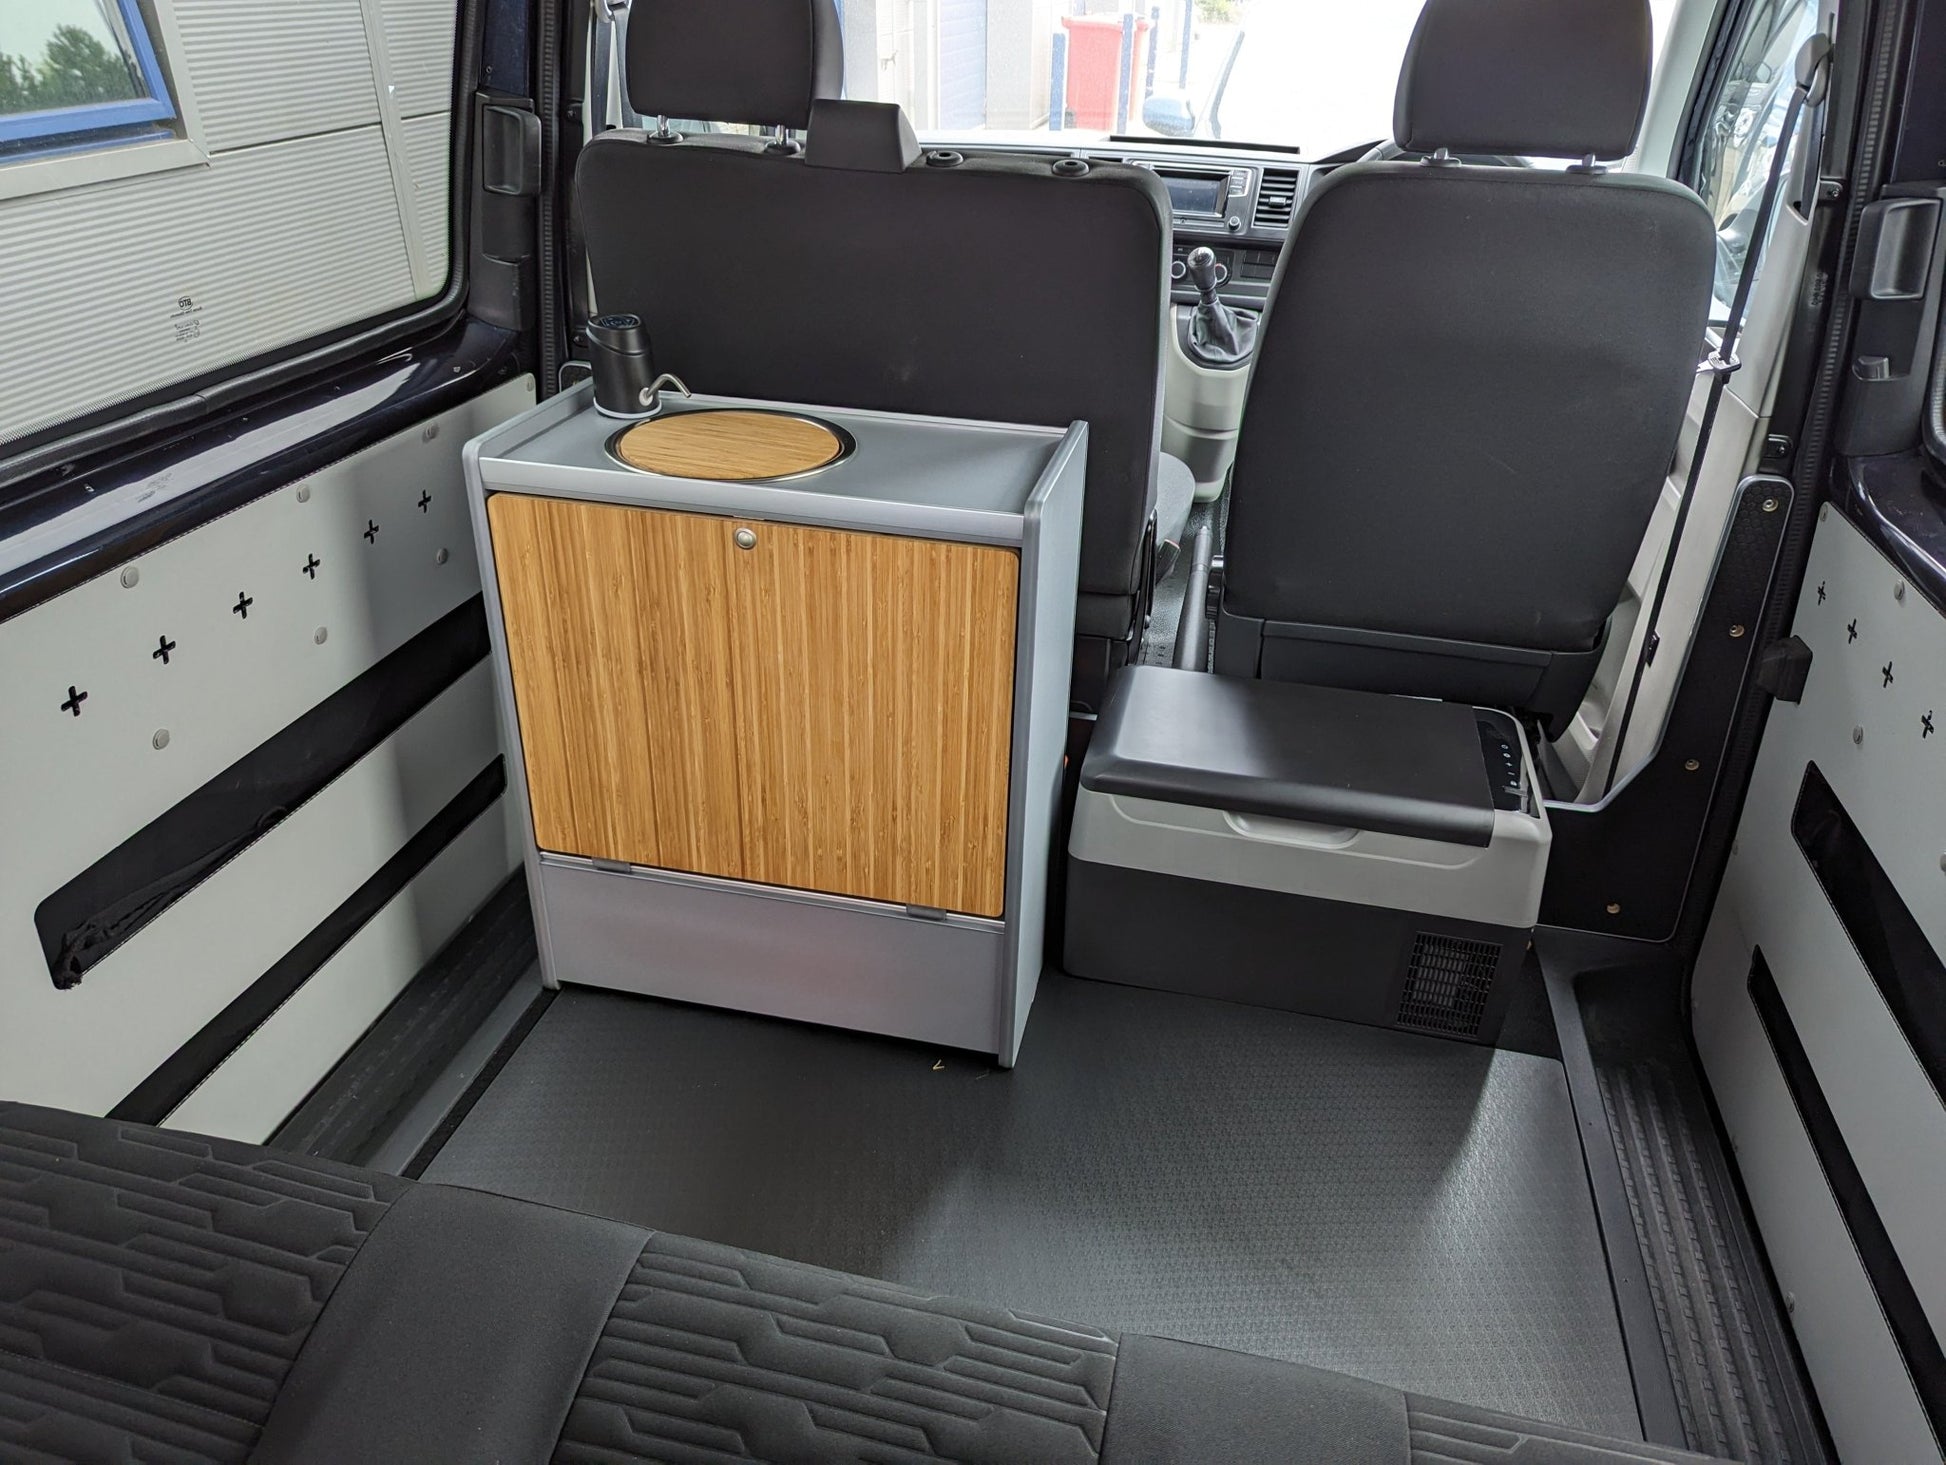 Vangear Nano-Pod campervan kitchen-Grey with Bamboo door - Vangear-EU